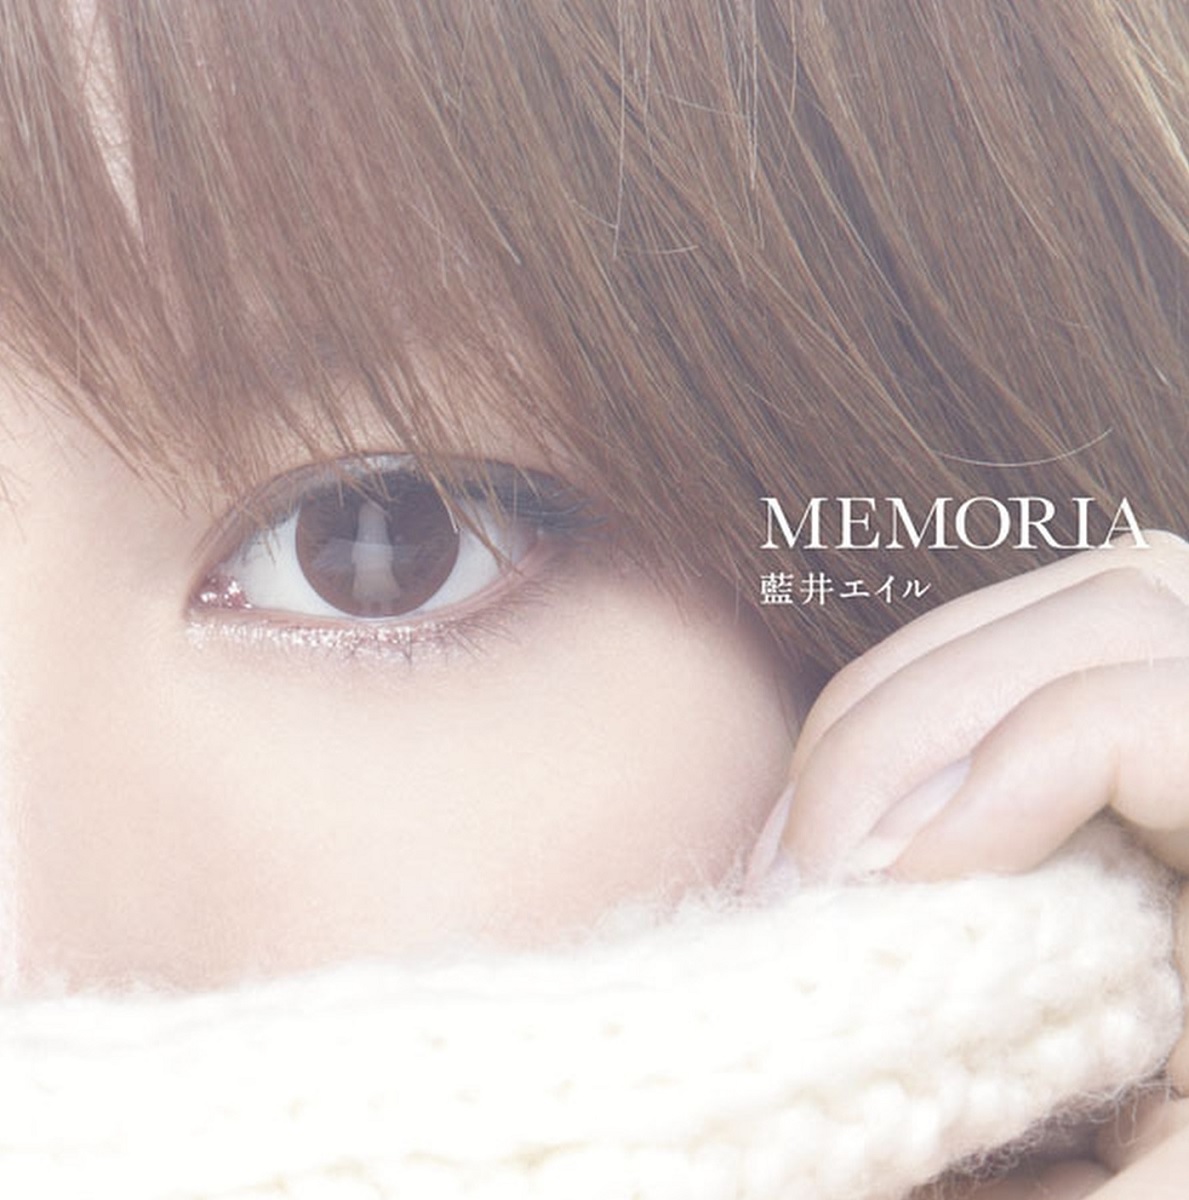 Cover for『Eir Aoi - MEMORIA』from the release『MEMORIA』